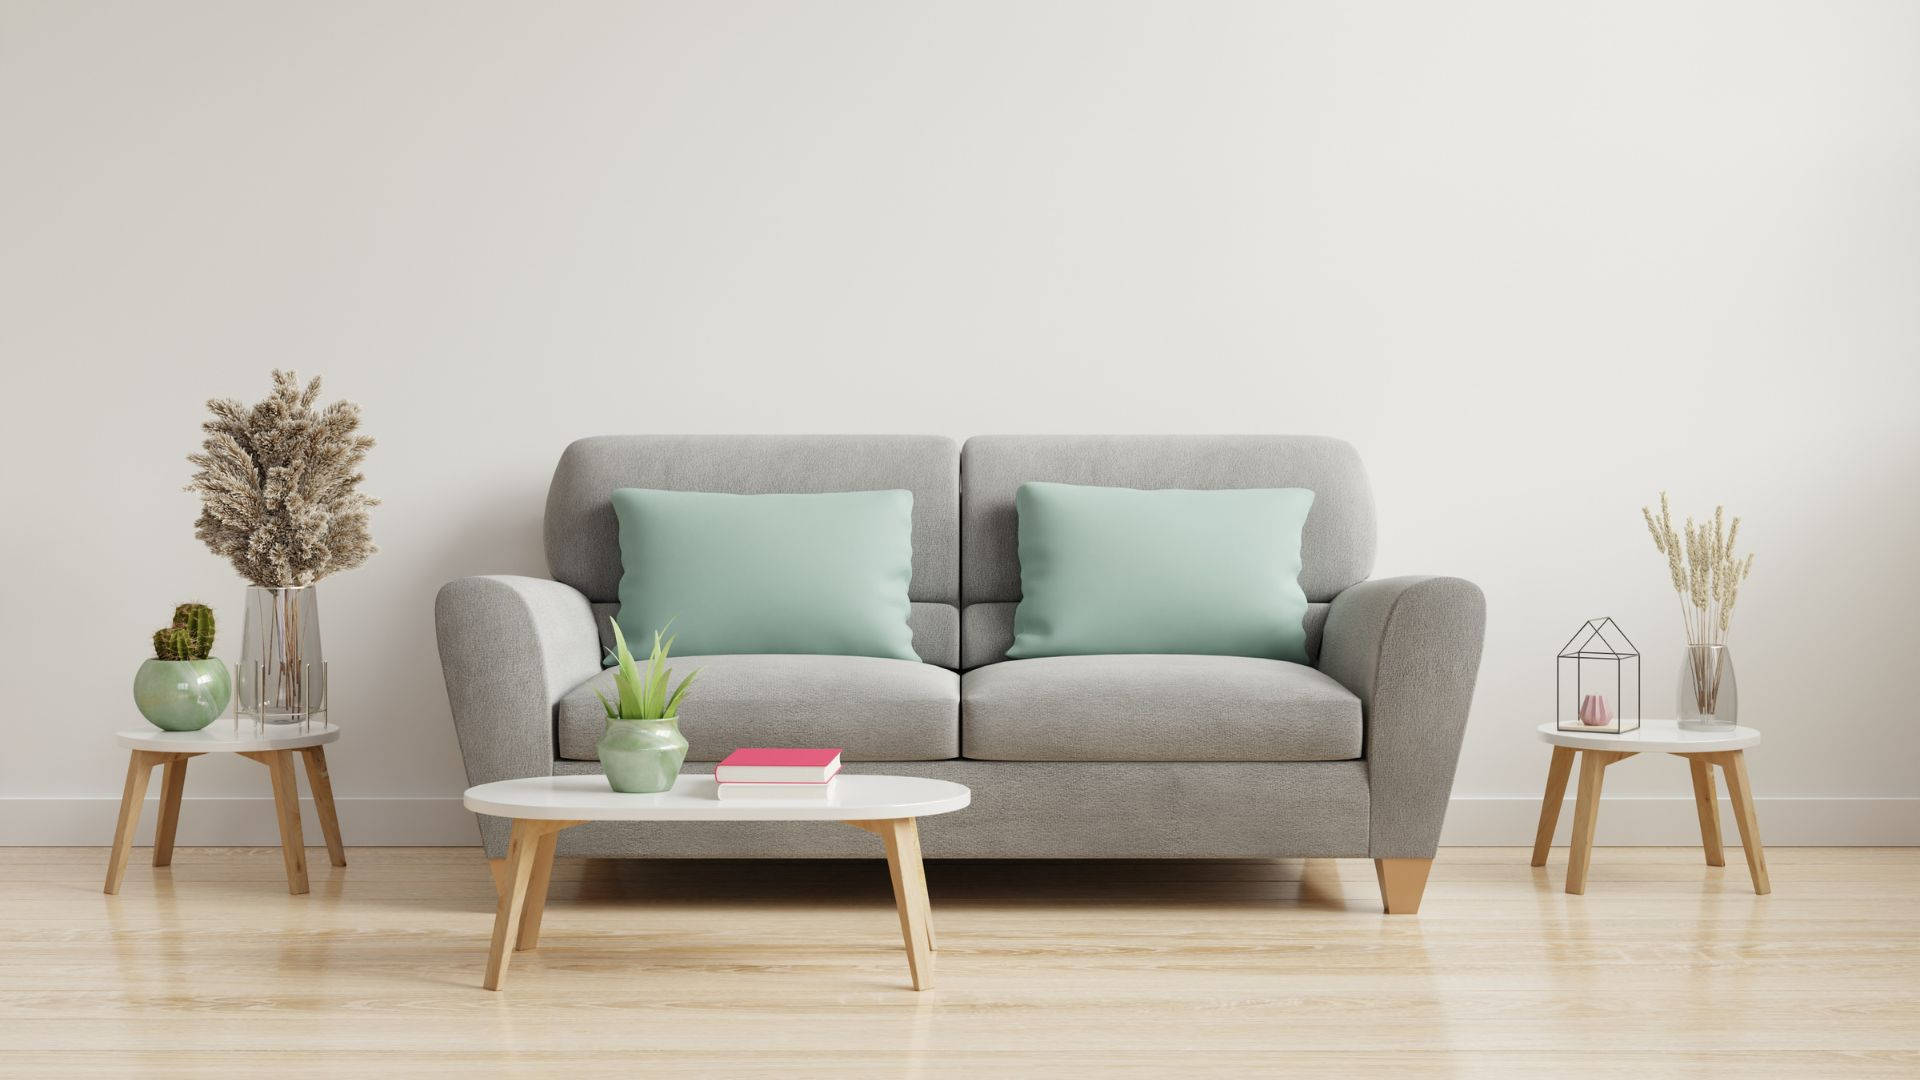 Modern Design Minimalist Furniture Background